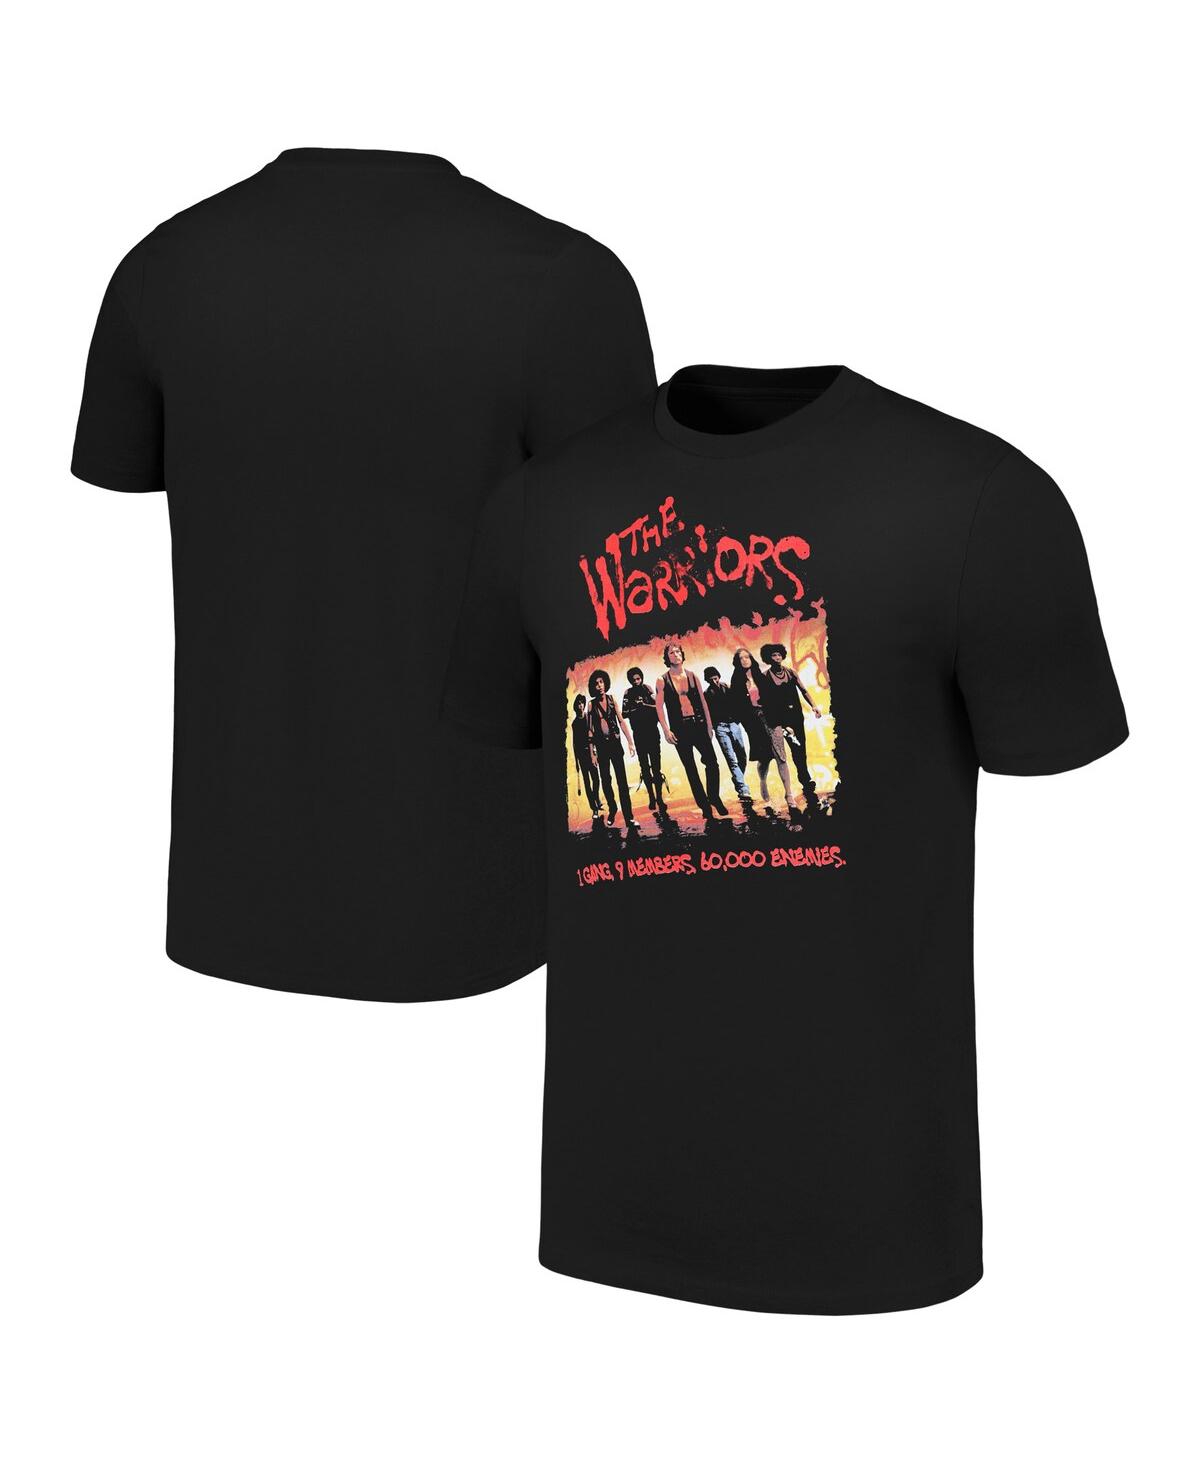 Men's Ripple Junction Black The Warriors Group T-shirt - Black